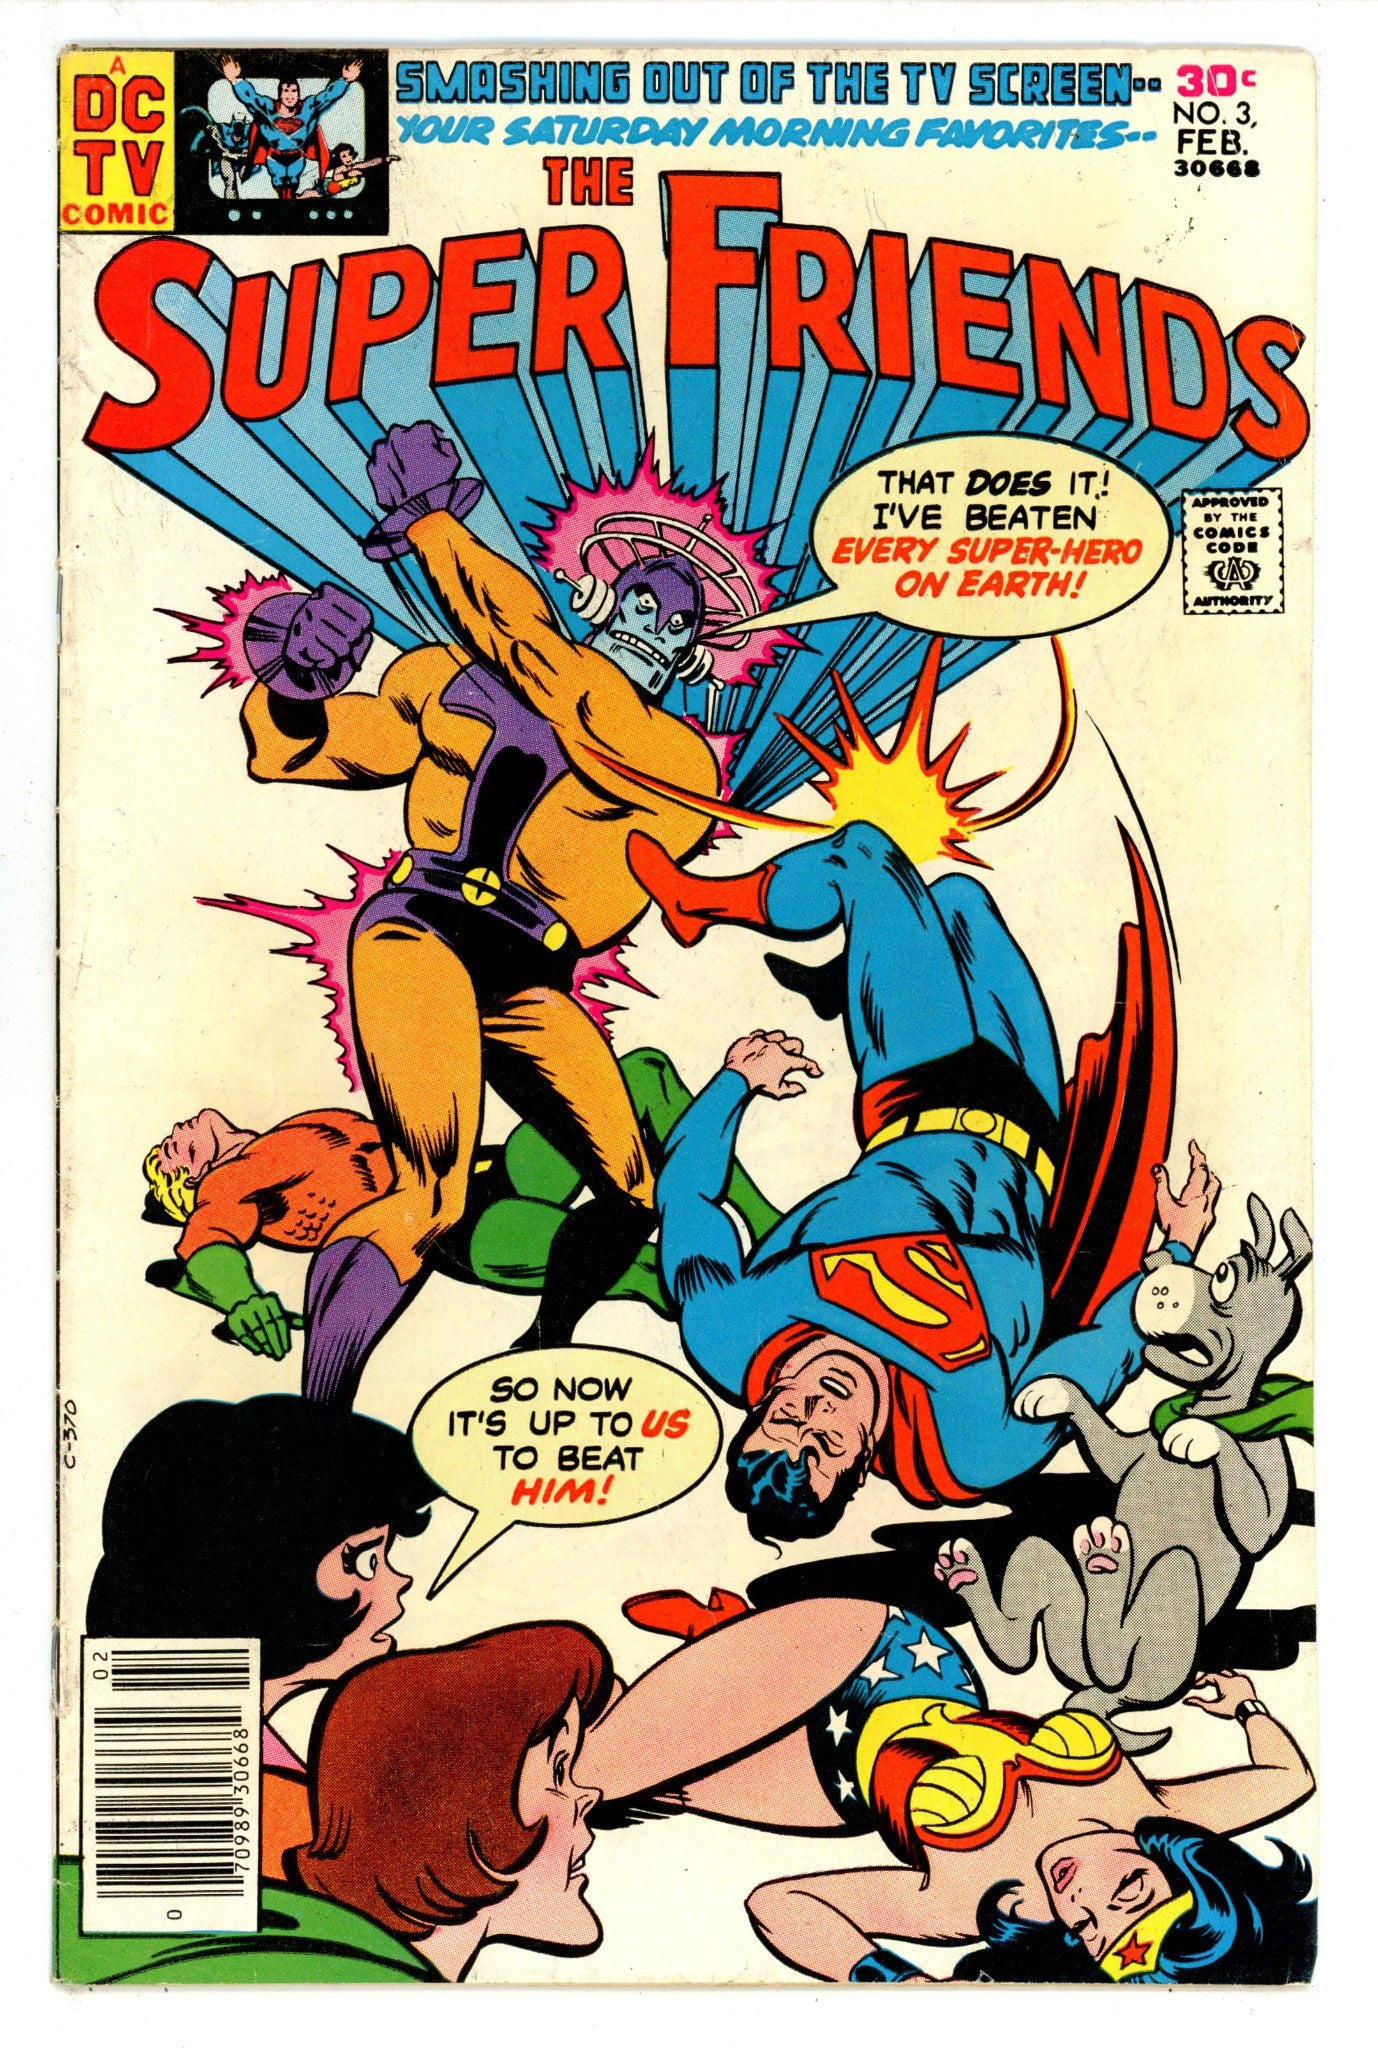 Super Friends Vol 1 3 VG (4.0) (1977) 